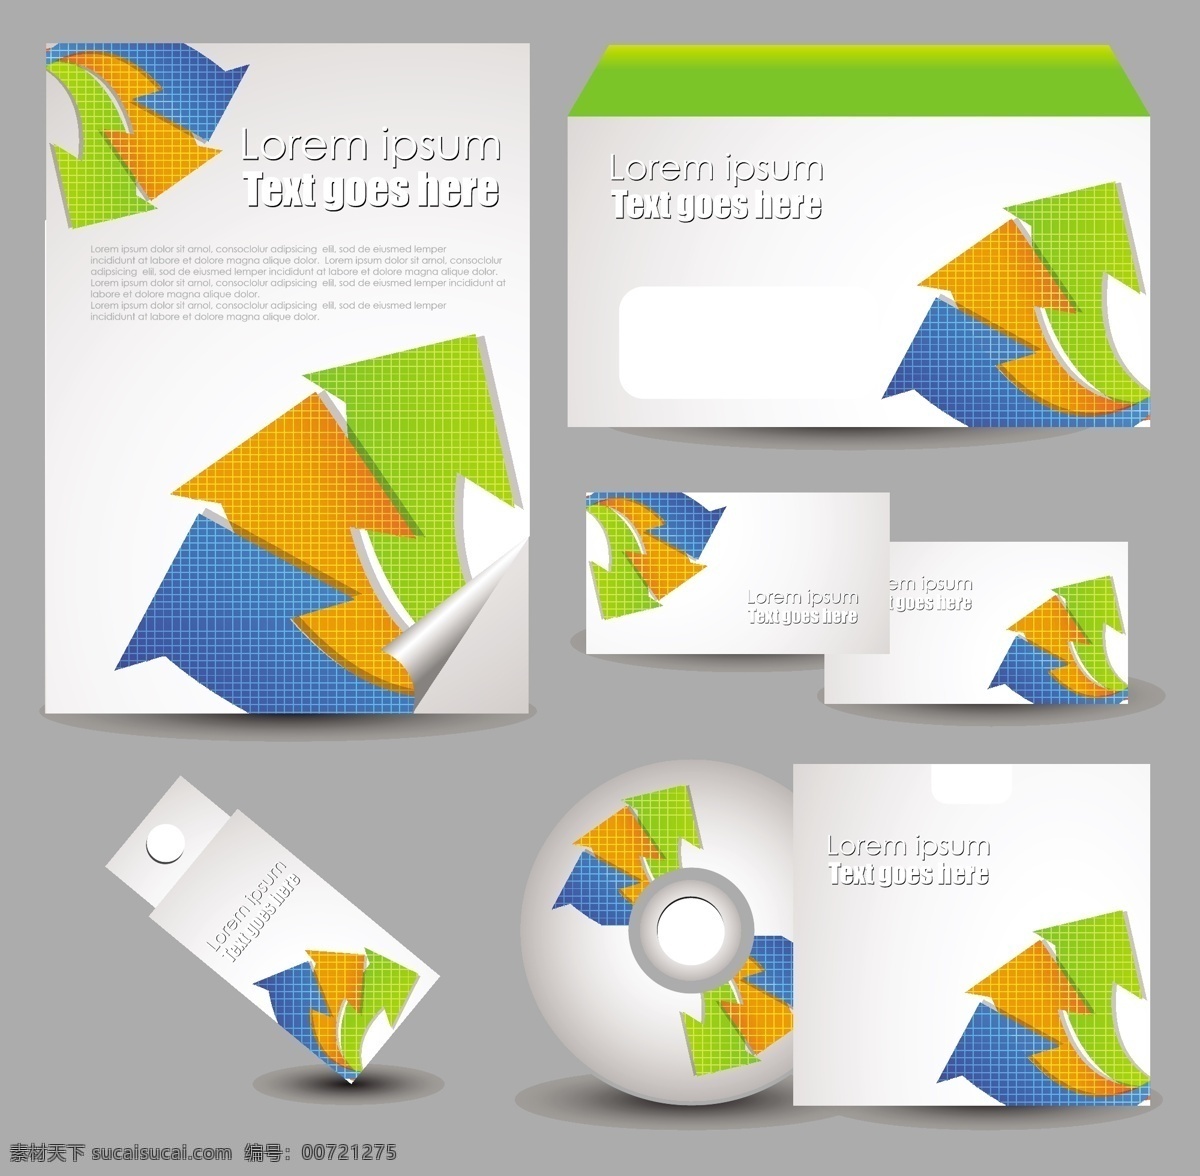 公司vi模板 vi模板 vi设计素材 vi vis vi识别系统 信纸 信封 光盘 cd封面 卡片 名片模板 箭头 vi设计 矢量素材 白色